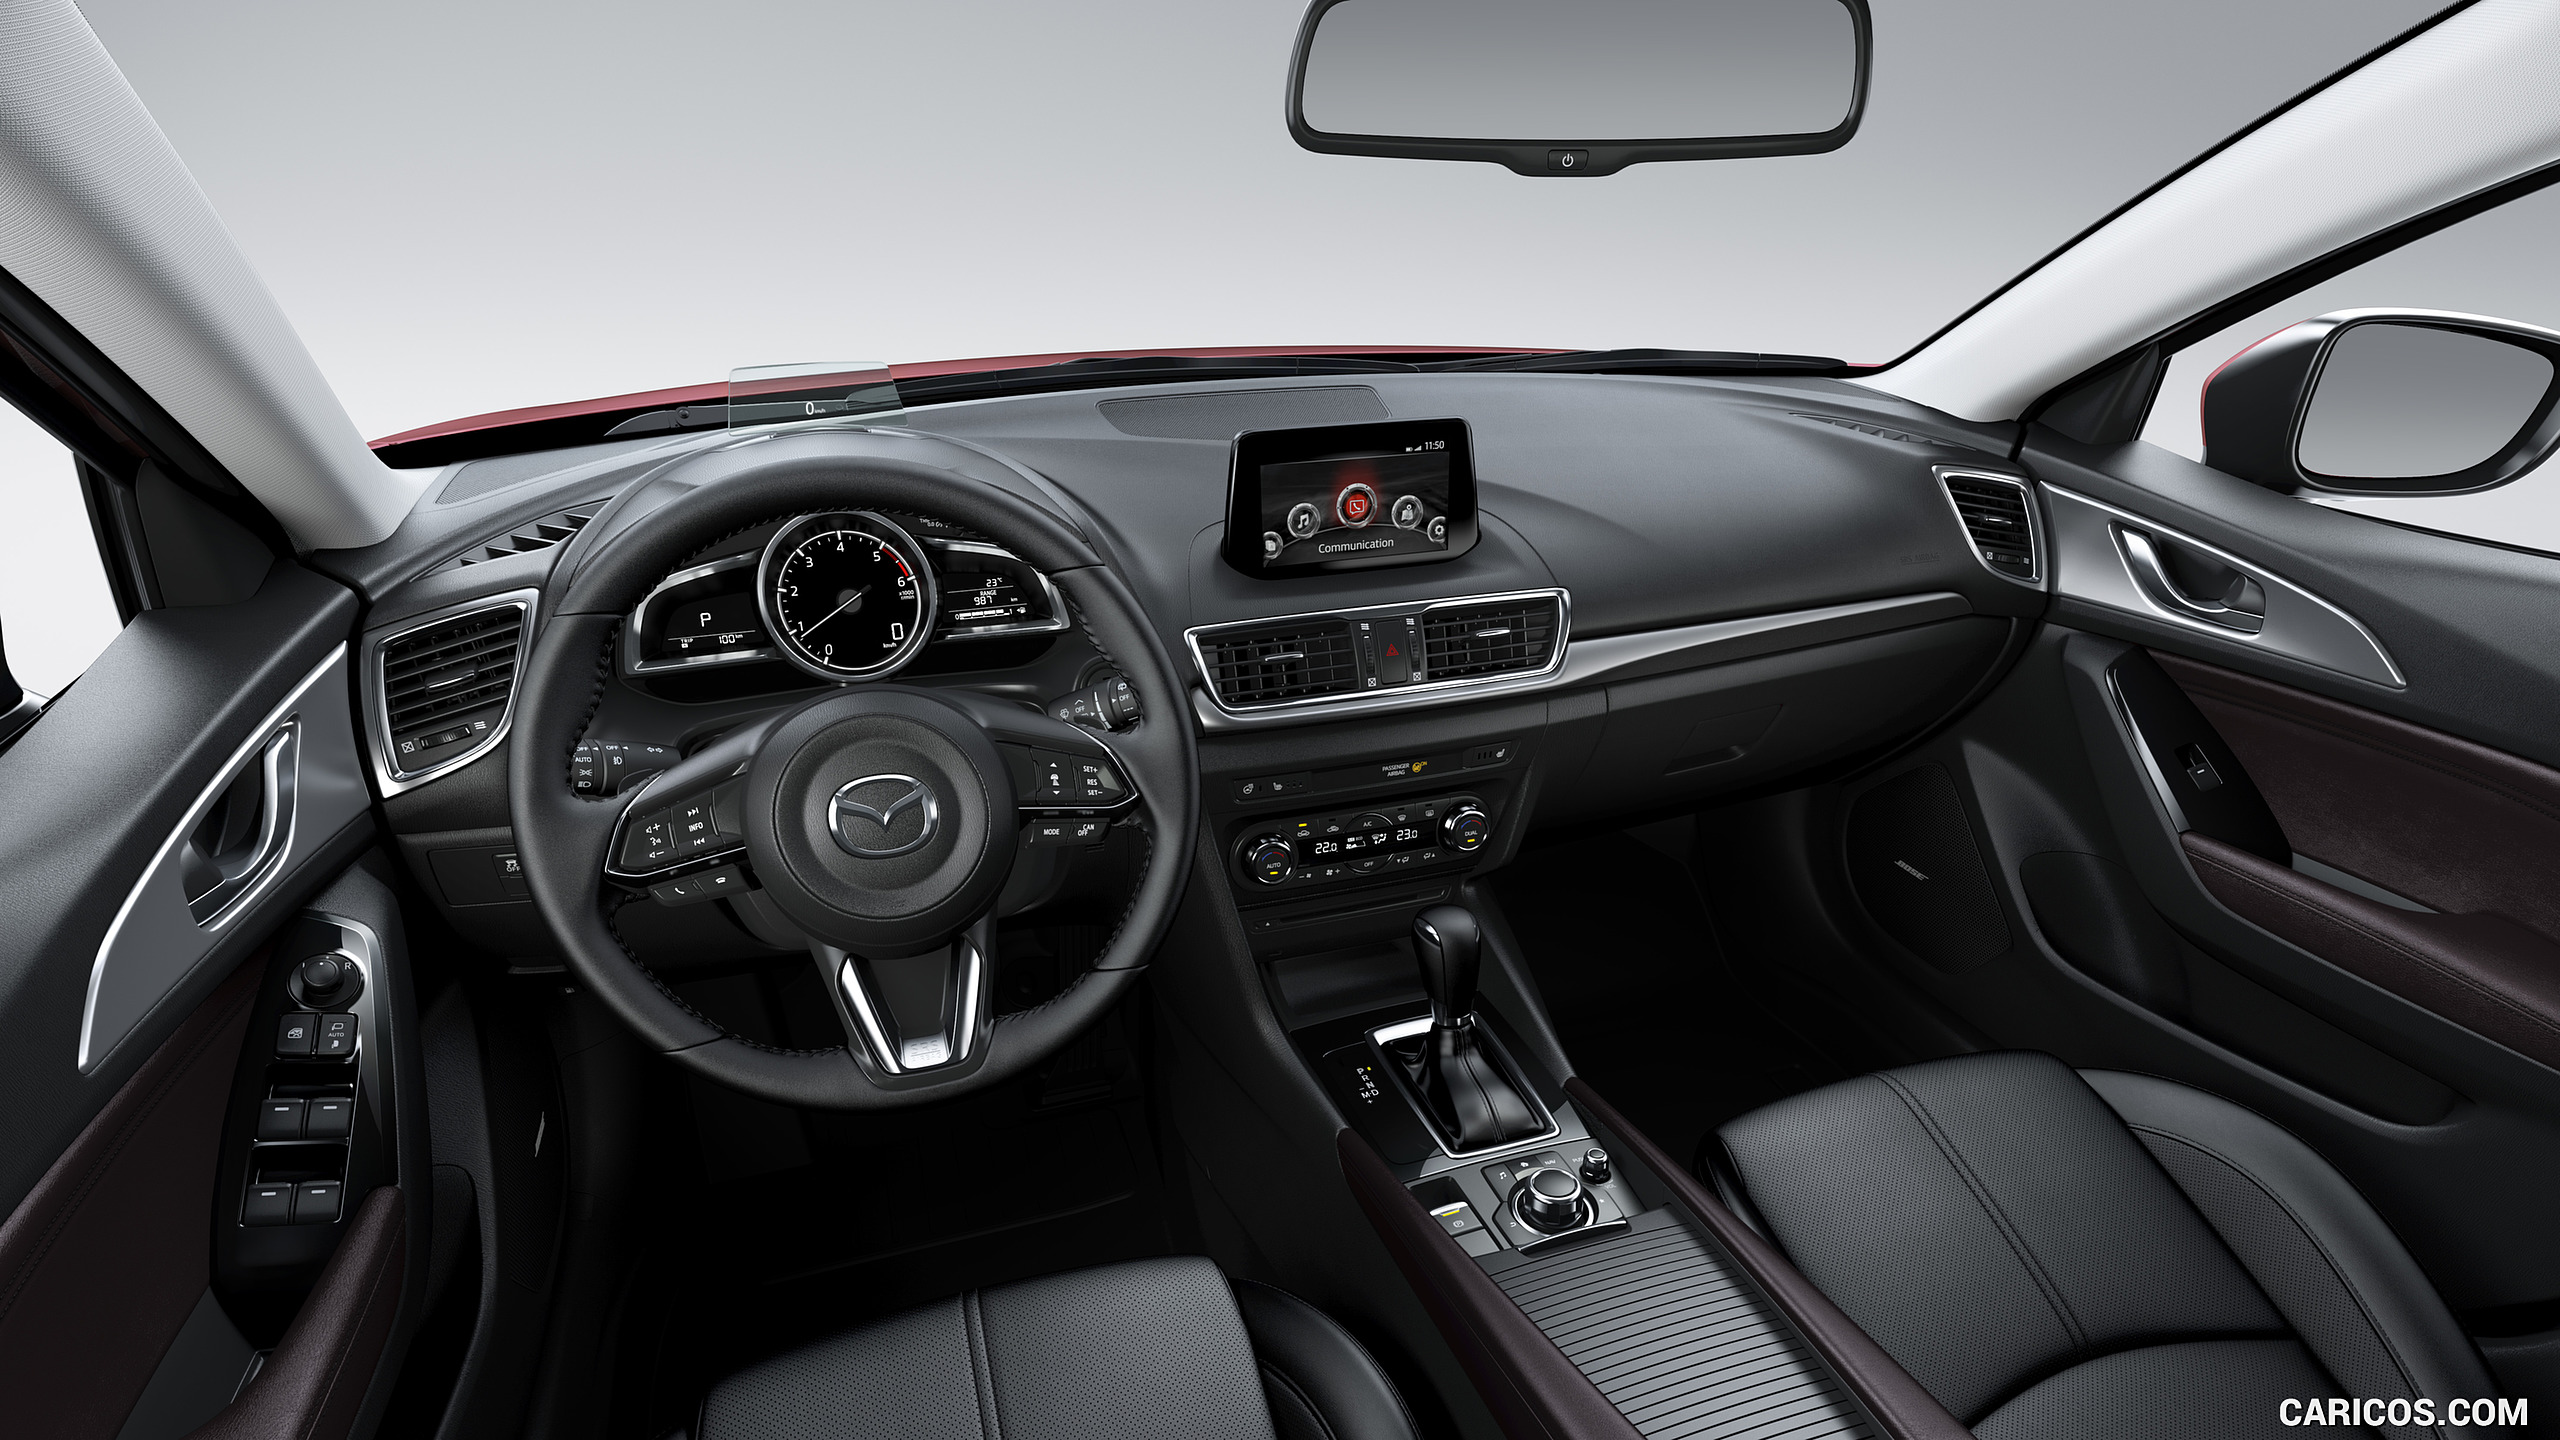 2017 Mazda 3 5-Door Hatchback - Interior, Cockpit, #9 of 19